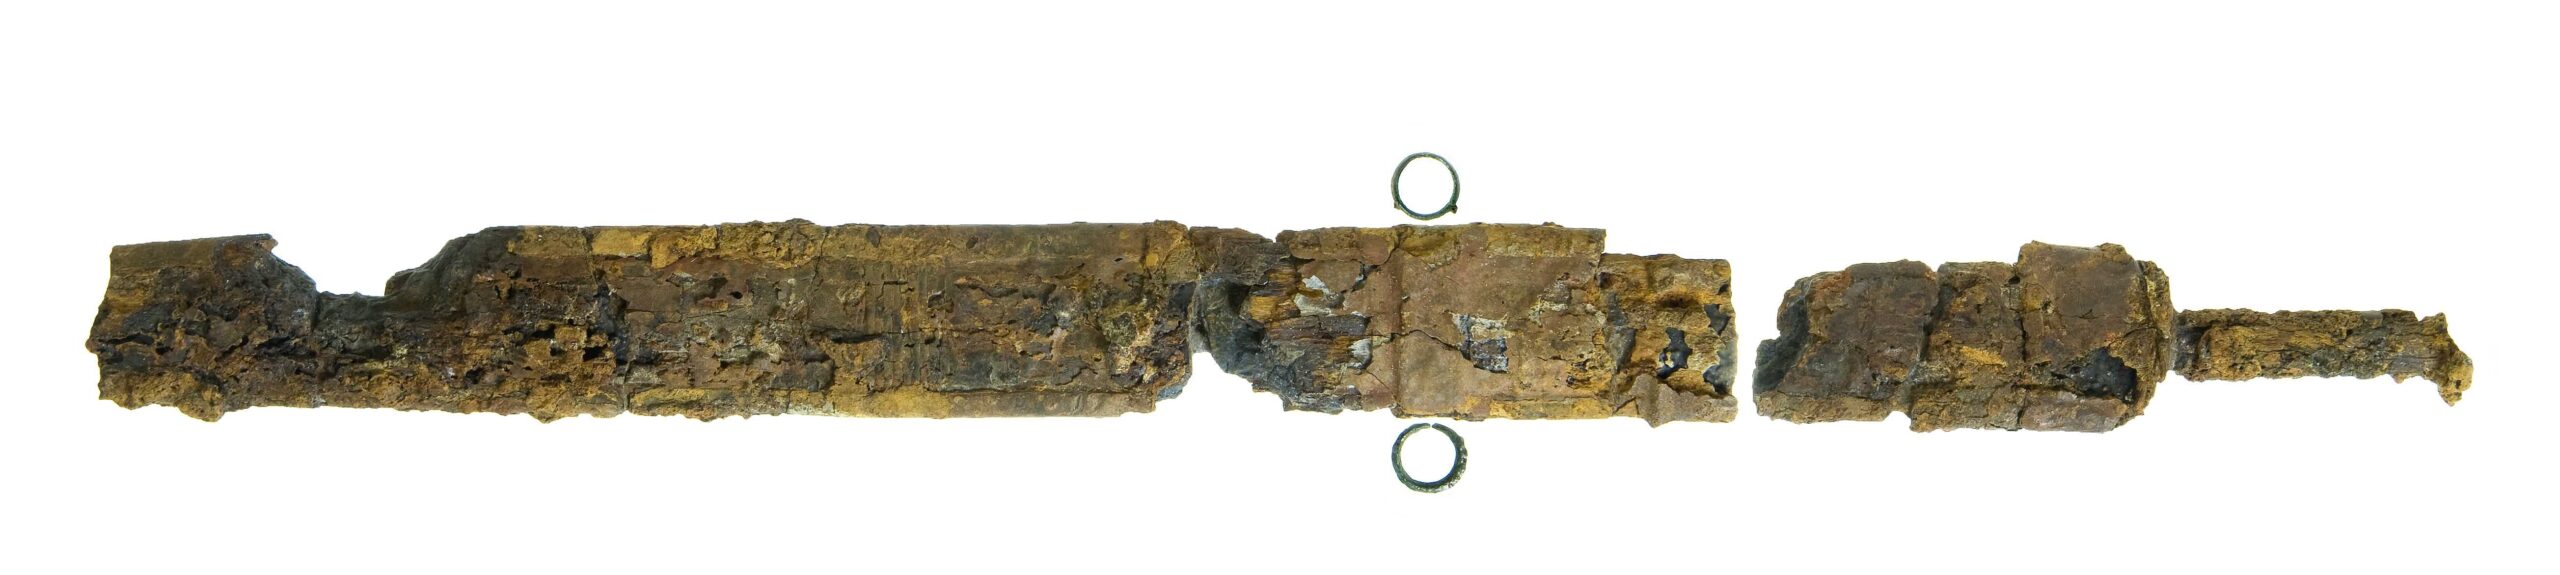 חרב בת 2,000 שנה. צילום: קלרה עמית, רשות העתיקות